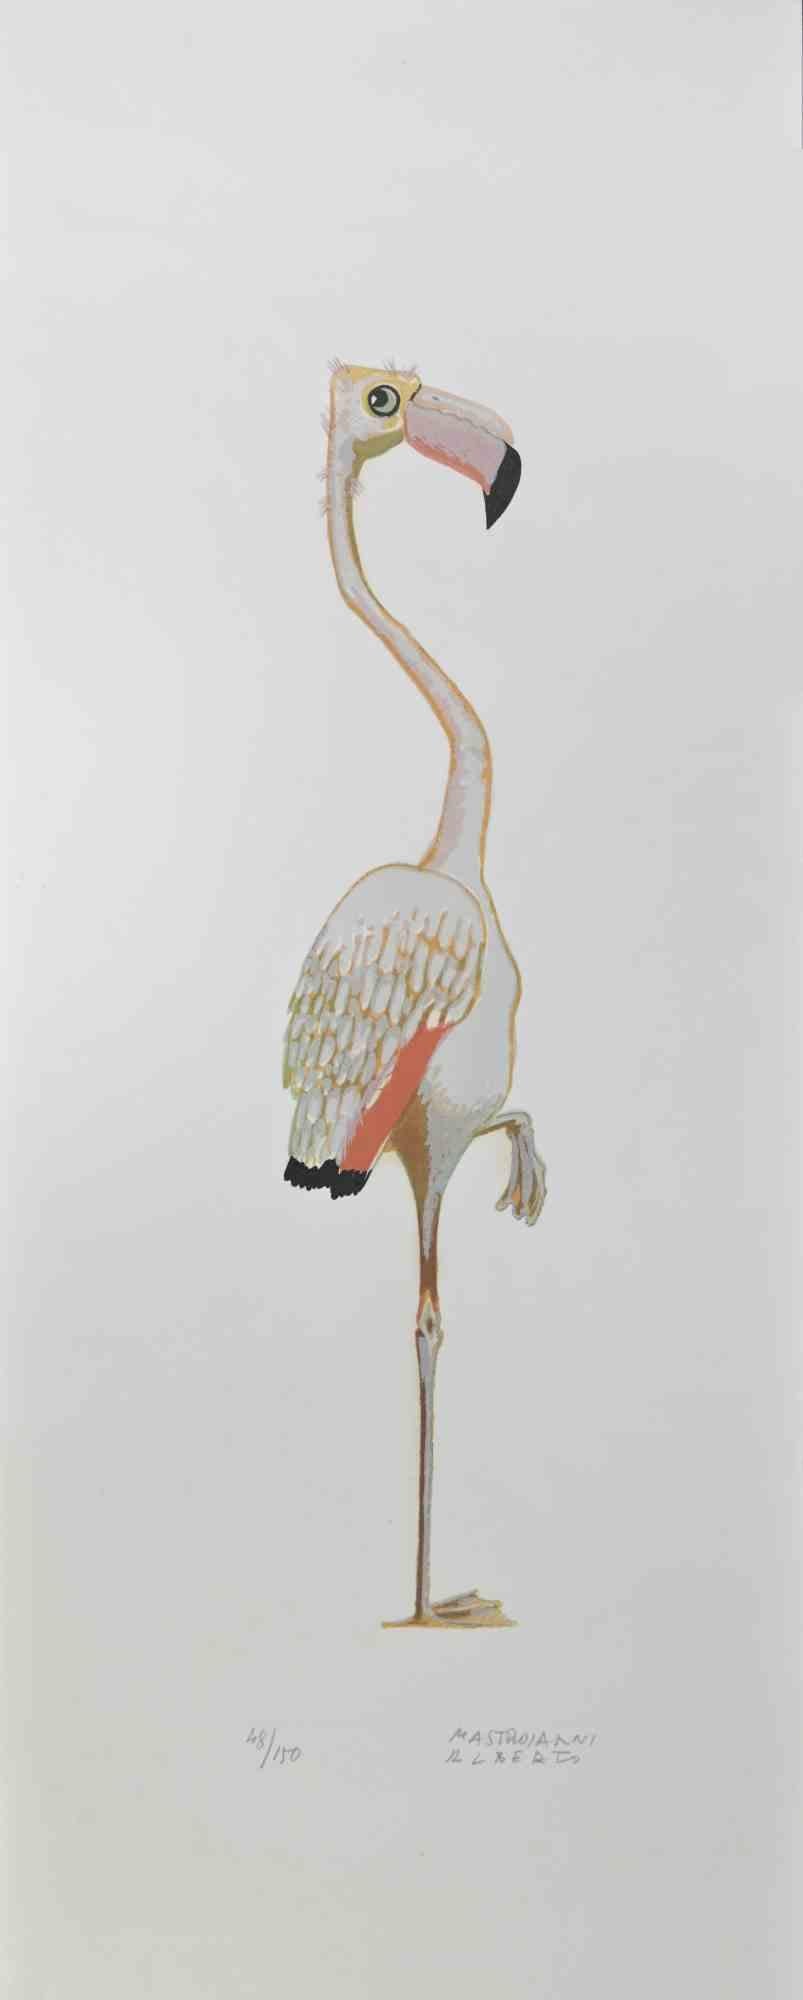 Flamingo ist eine Lithographie von Alberto Mastroianni aus den 1970er Jahren.

Handsigniert am unteren rechten Rand. Unten mit Bleistift nummeriert, Auflage: 150 Exemplare.

Das Kunstwerk stellt einen interessanten rosa Flamingo dar, eine